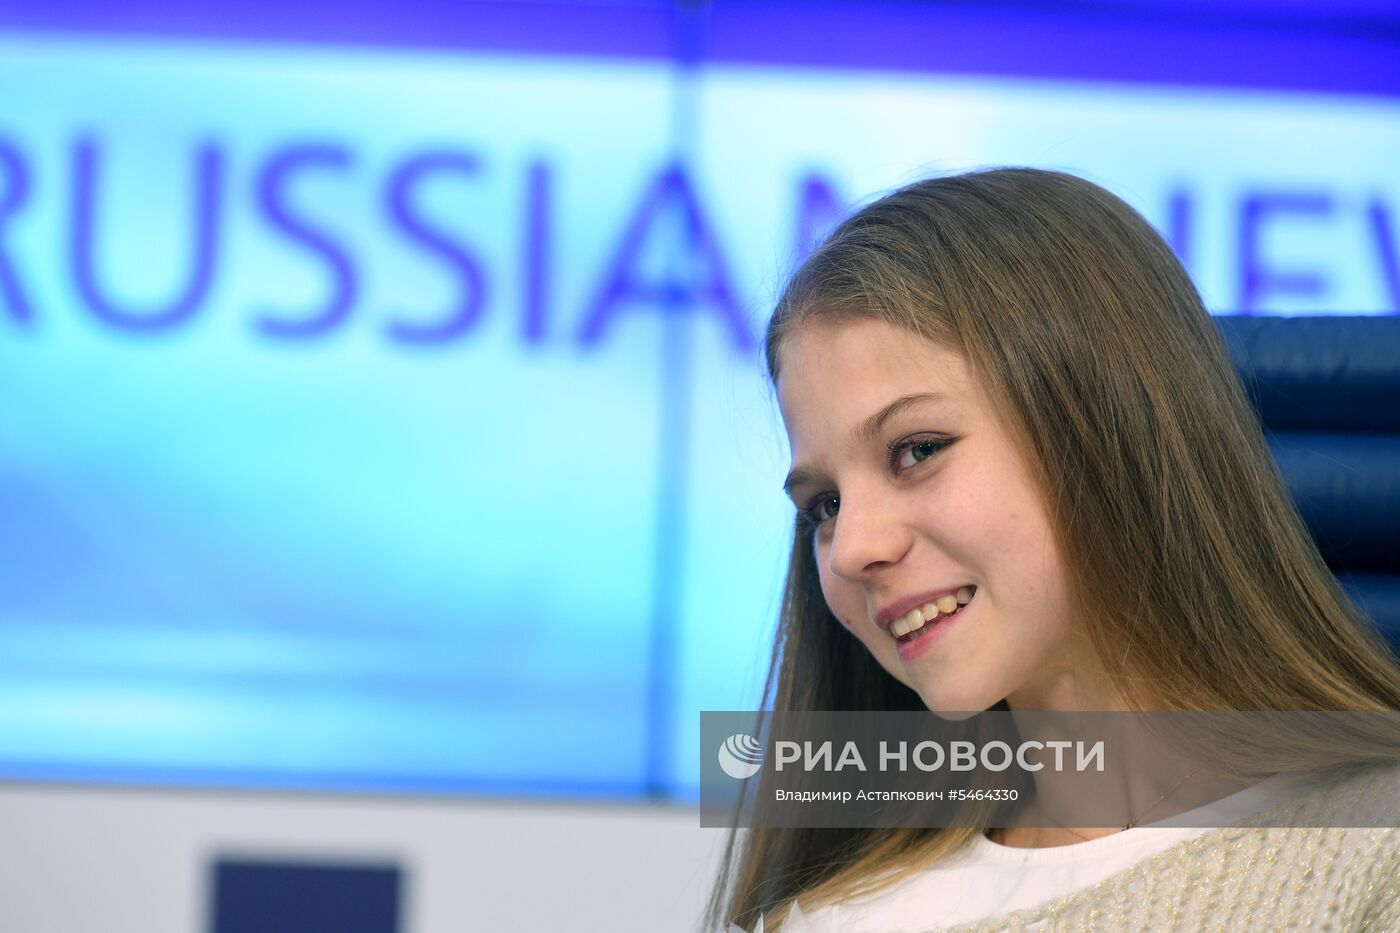 Пресс-конференция Федерации фигурного катания России